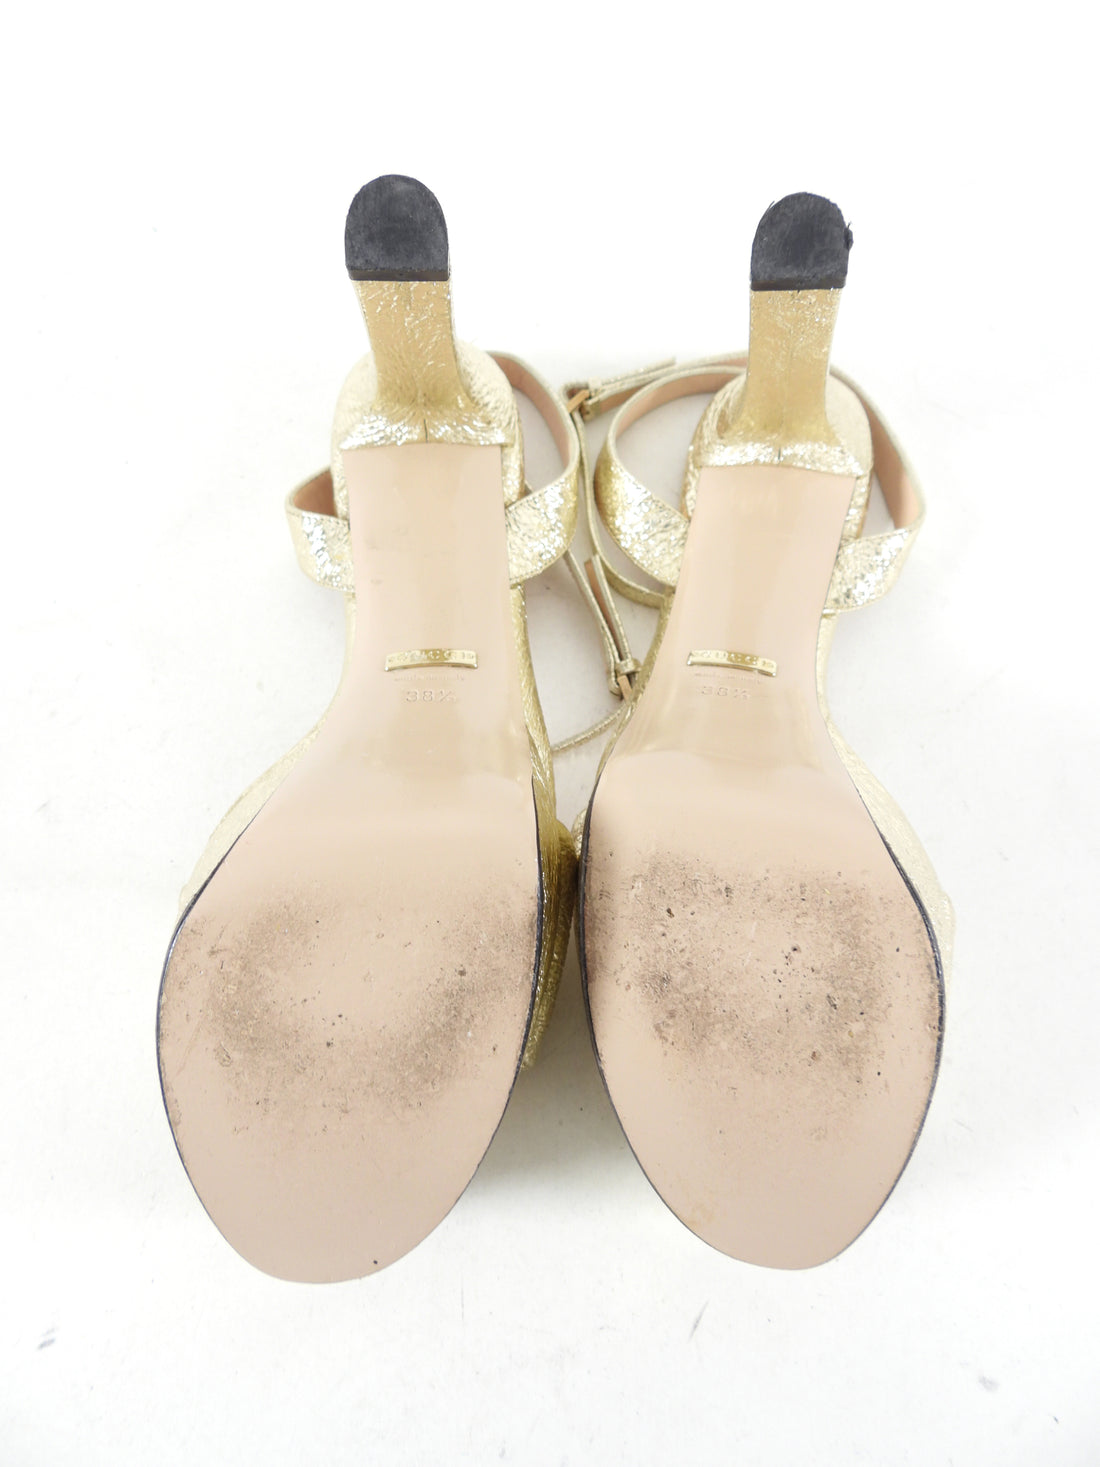 Gucci Light Gold Crackled Metallic Platform Sandals - 38.5